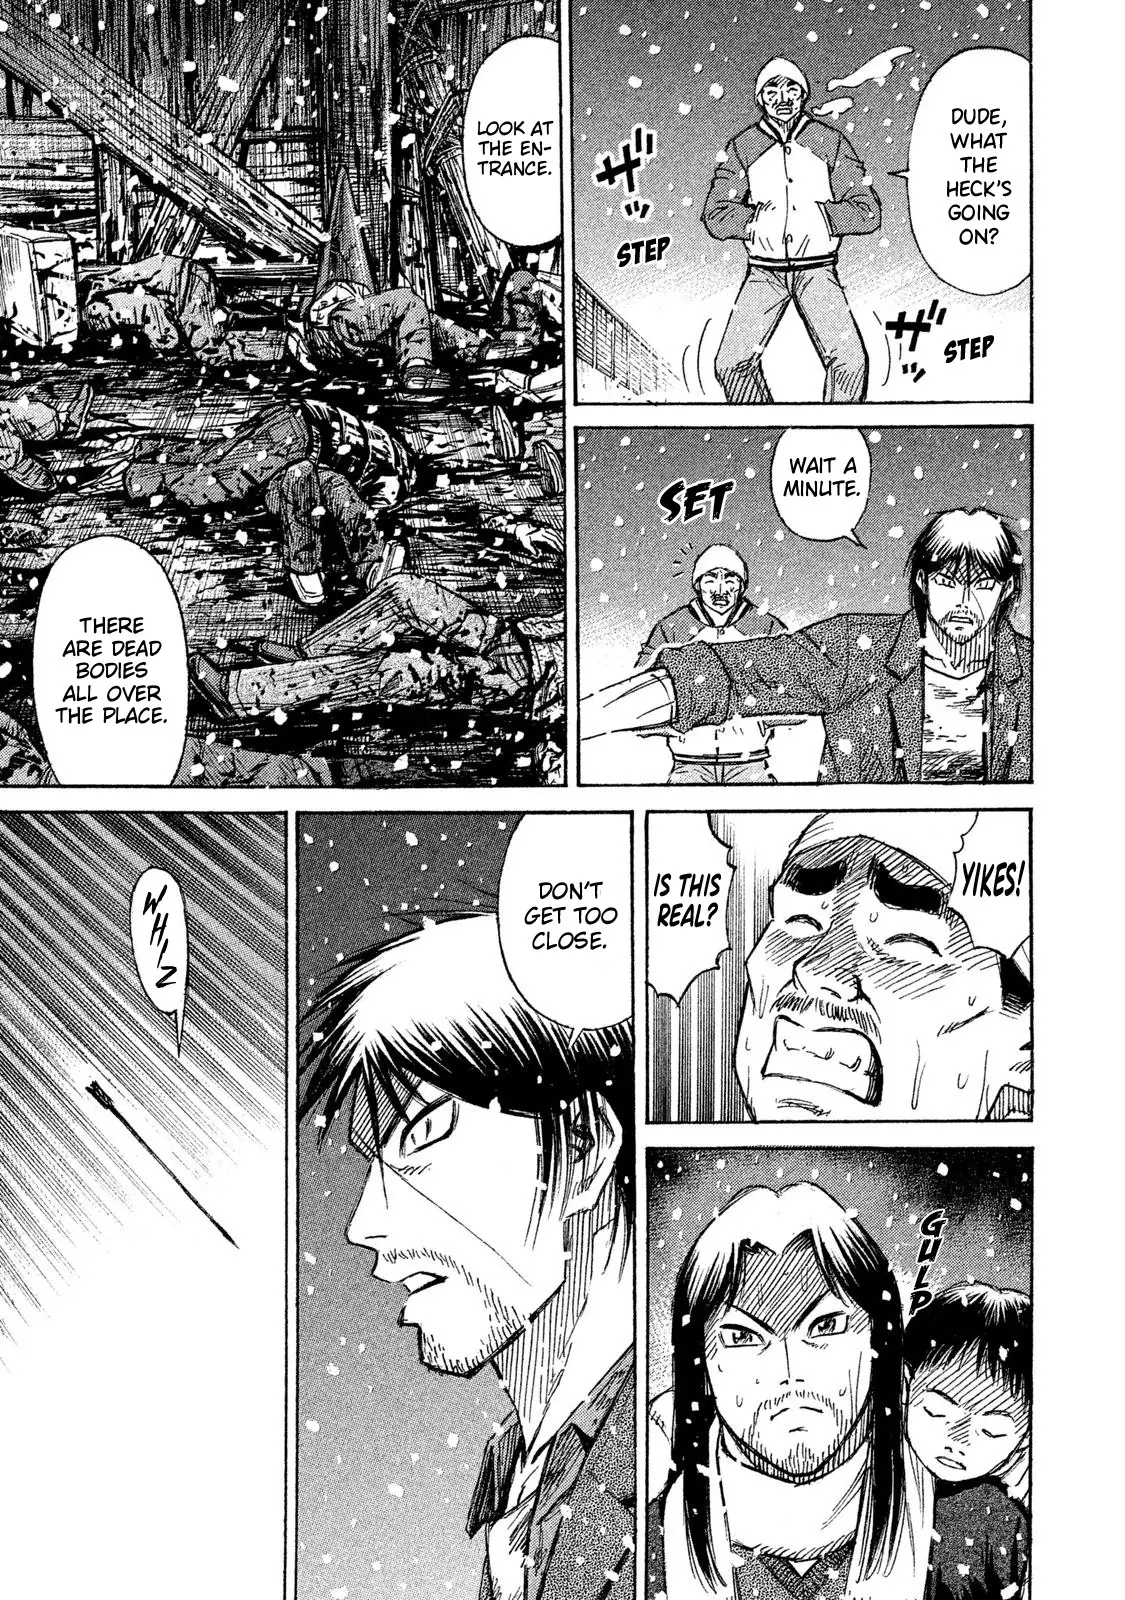 Higanjima - 48 Days Later - 22 page 15-c015c9ed